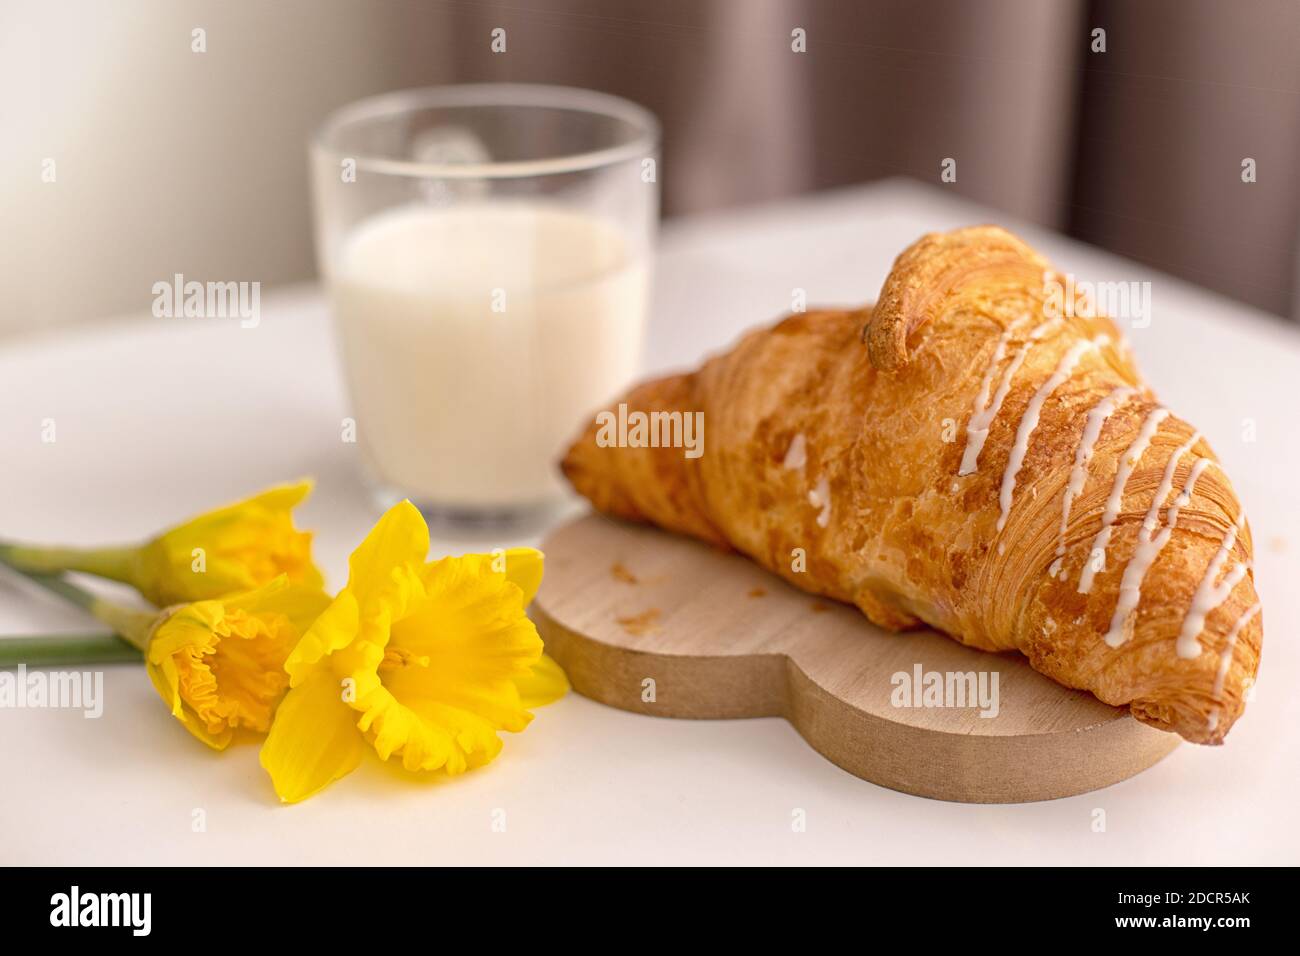 Tre fiori di narciso gialli, un grande croissant francese e un bicchiere di latte. Foto Stock